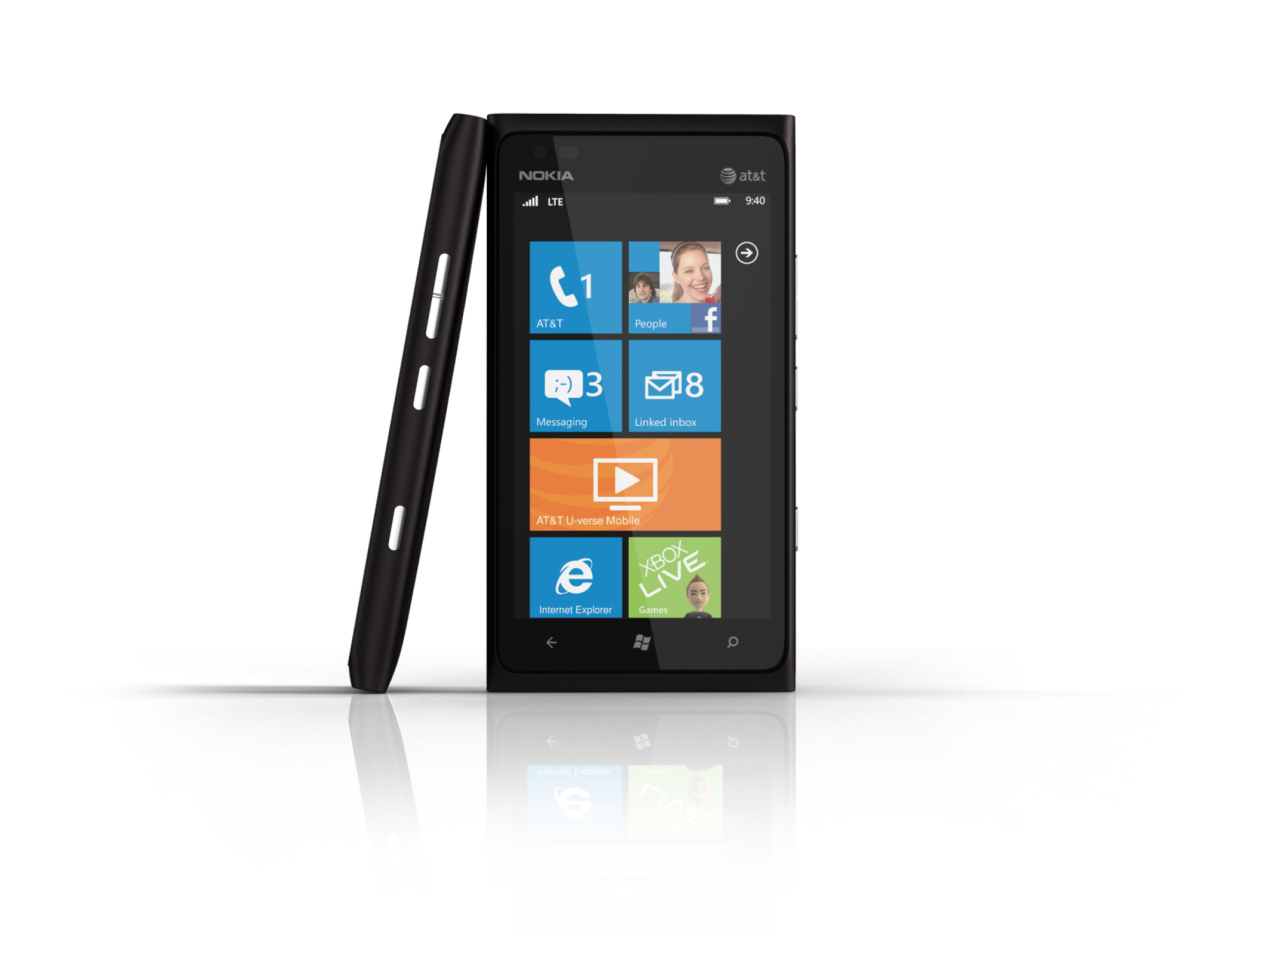 Windows Phone Nokia Lumia 900 wallpaper 1280x960